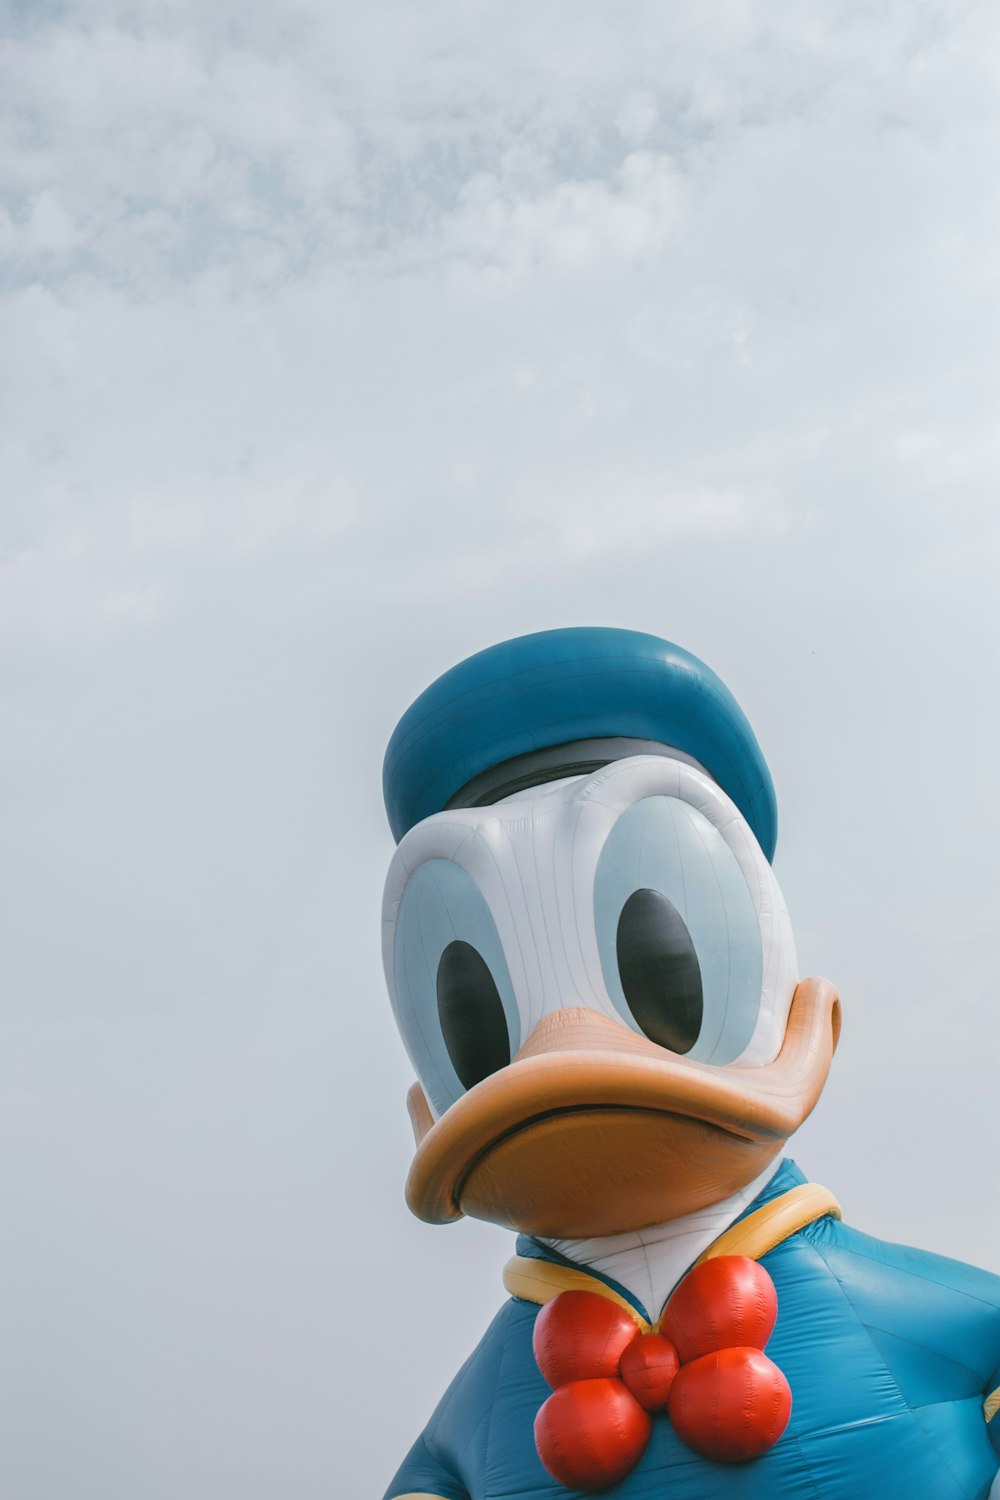 500+ Fotos del Pato Donald [HD]  Descargar imágenes gratis en Unsplash